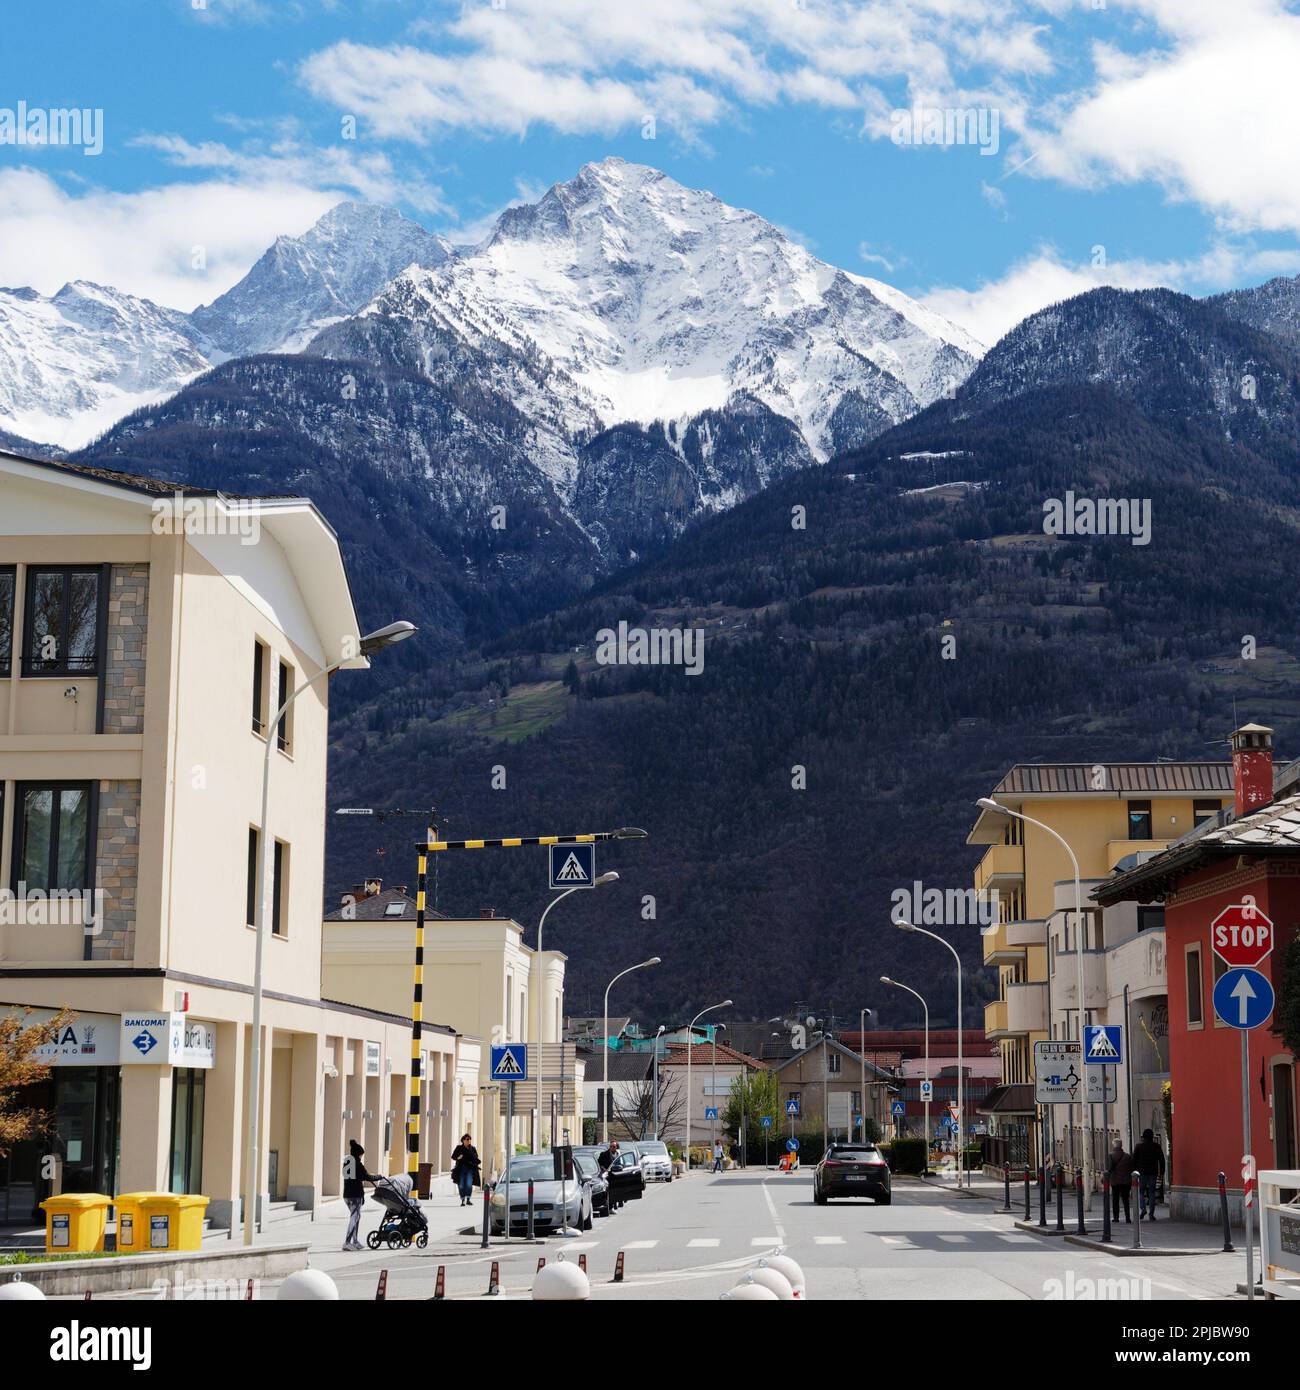 Les montagnes enneigées surplombent la ville d'Aoste tandis que quelqu'un pousse une poussette vers une traversée de zèbre. Aoste Vally, Italie Banque D'Images